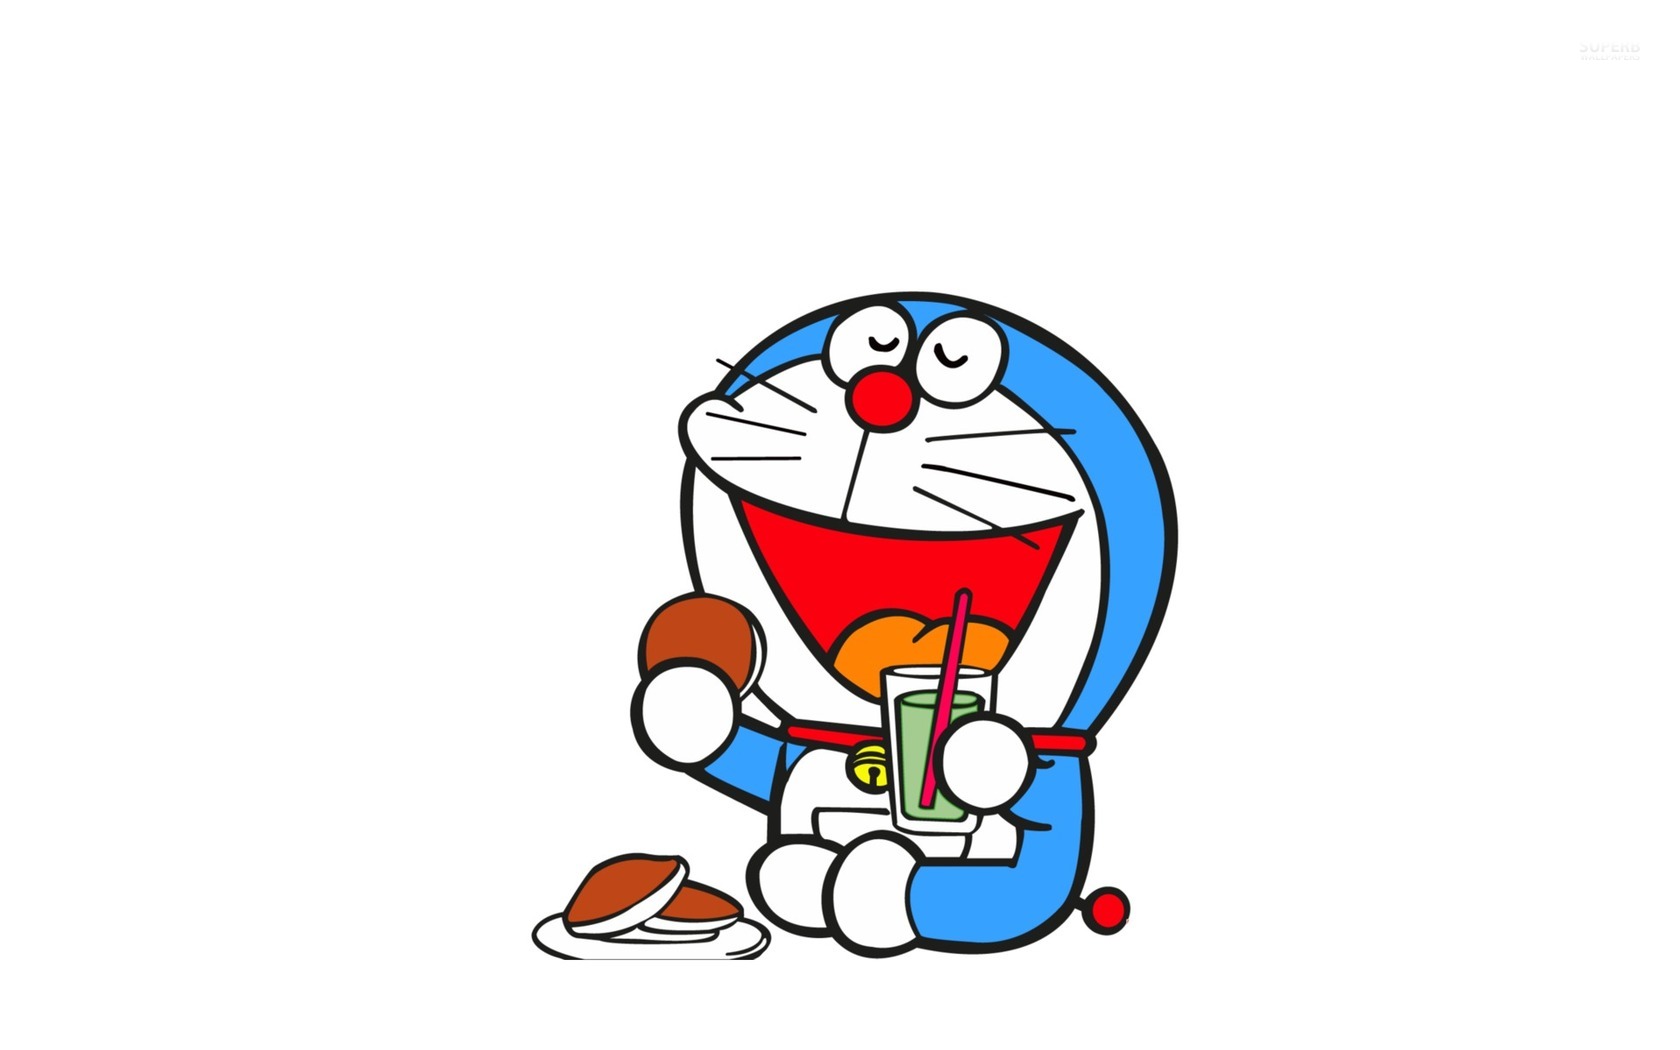  Doraemon  Wallpaper  for iPhone WallpaperSafari